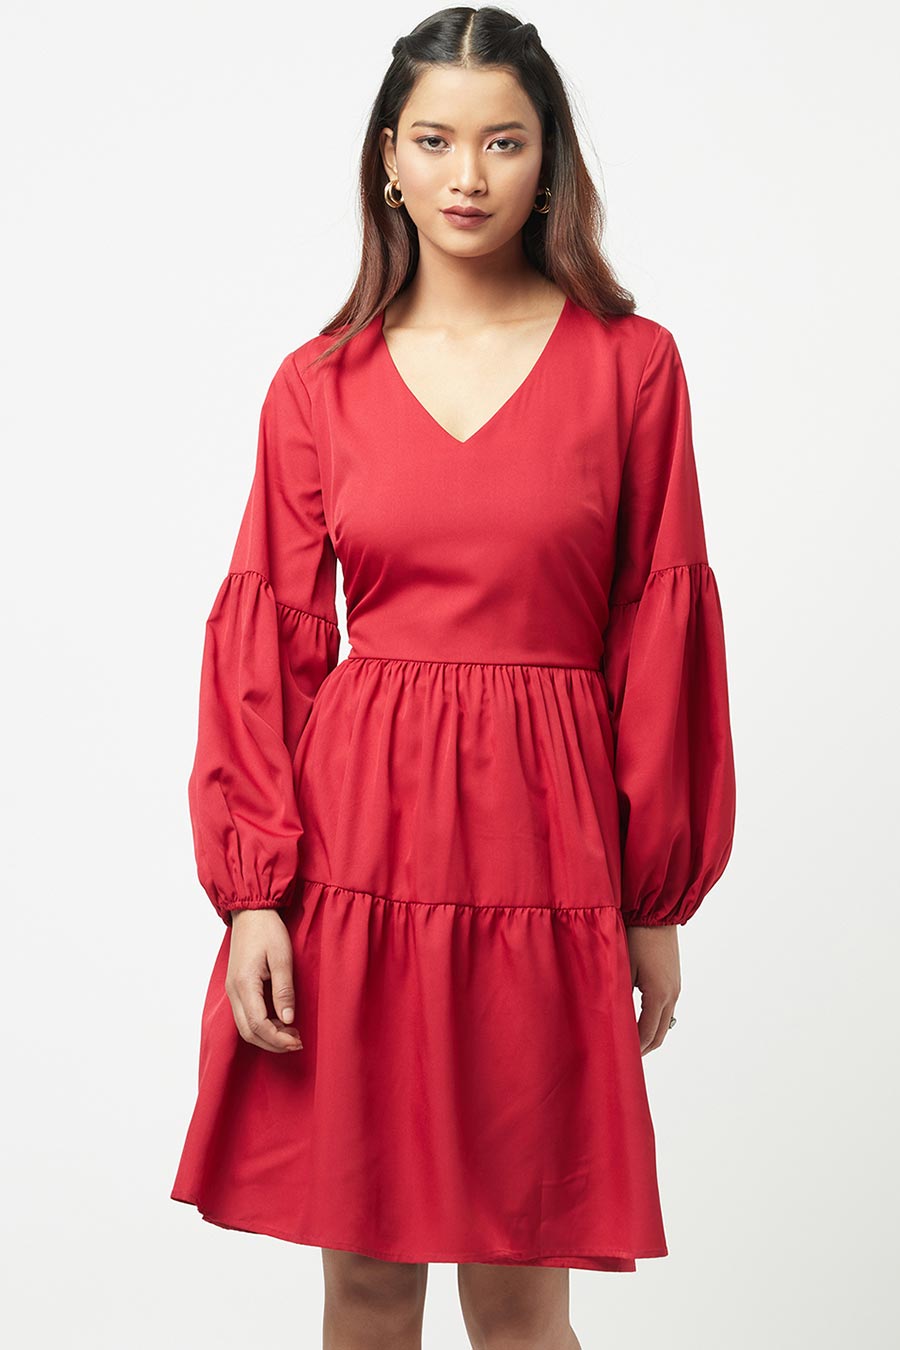 Red Tiered Mini Dress